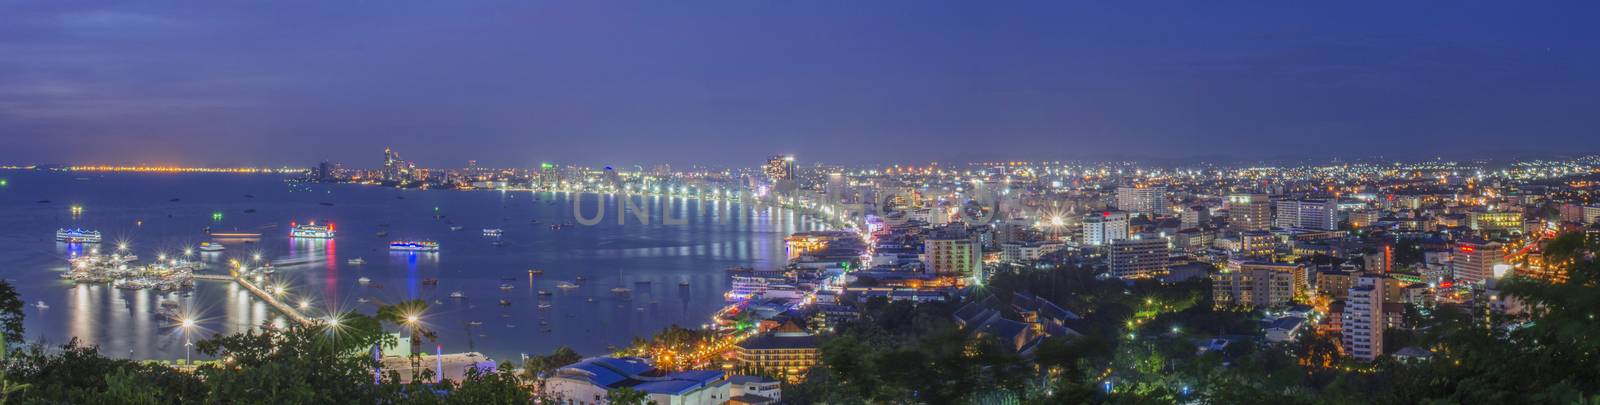 Night of Pattaya City by kobfujar